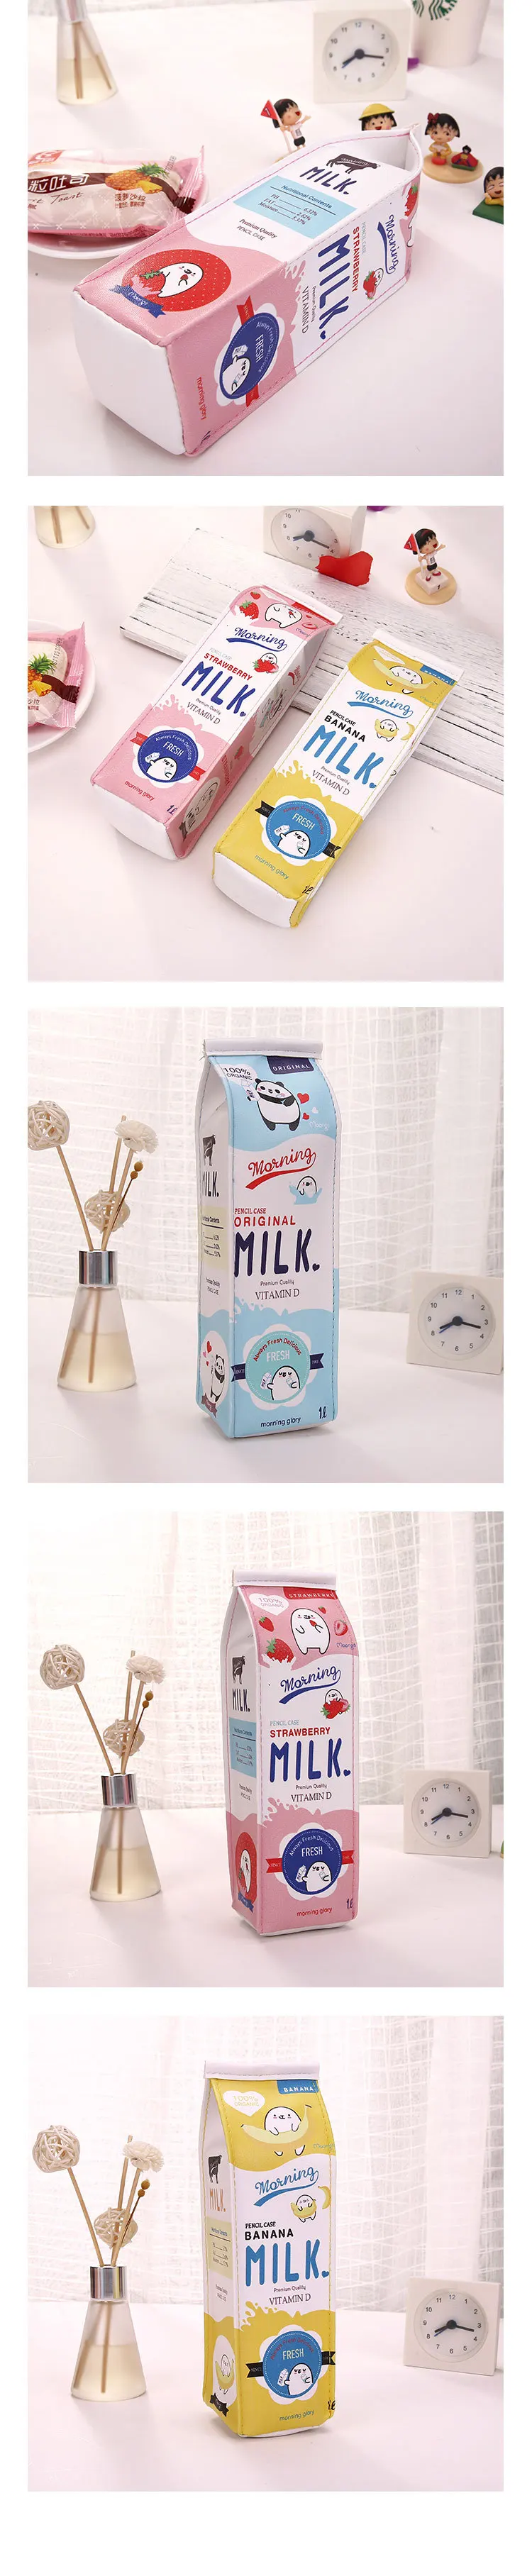 Мультфильм молоко симпатичный пенал Корея Творческий большой емкости Пенал для начальной школы студентов пенал мода канцелярские